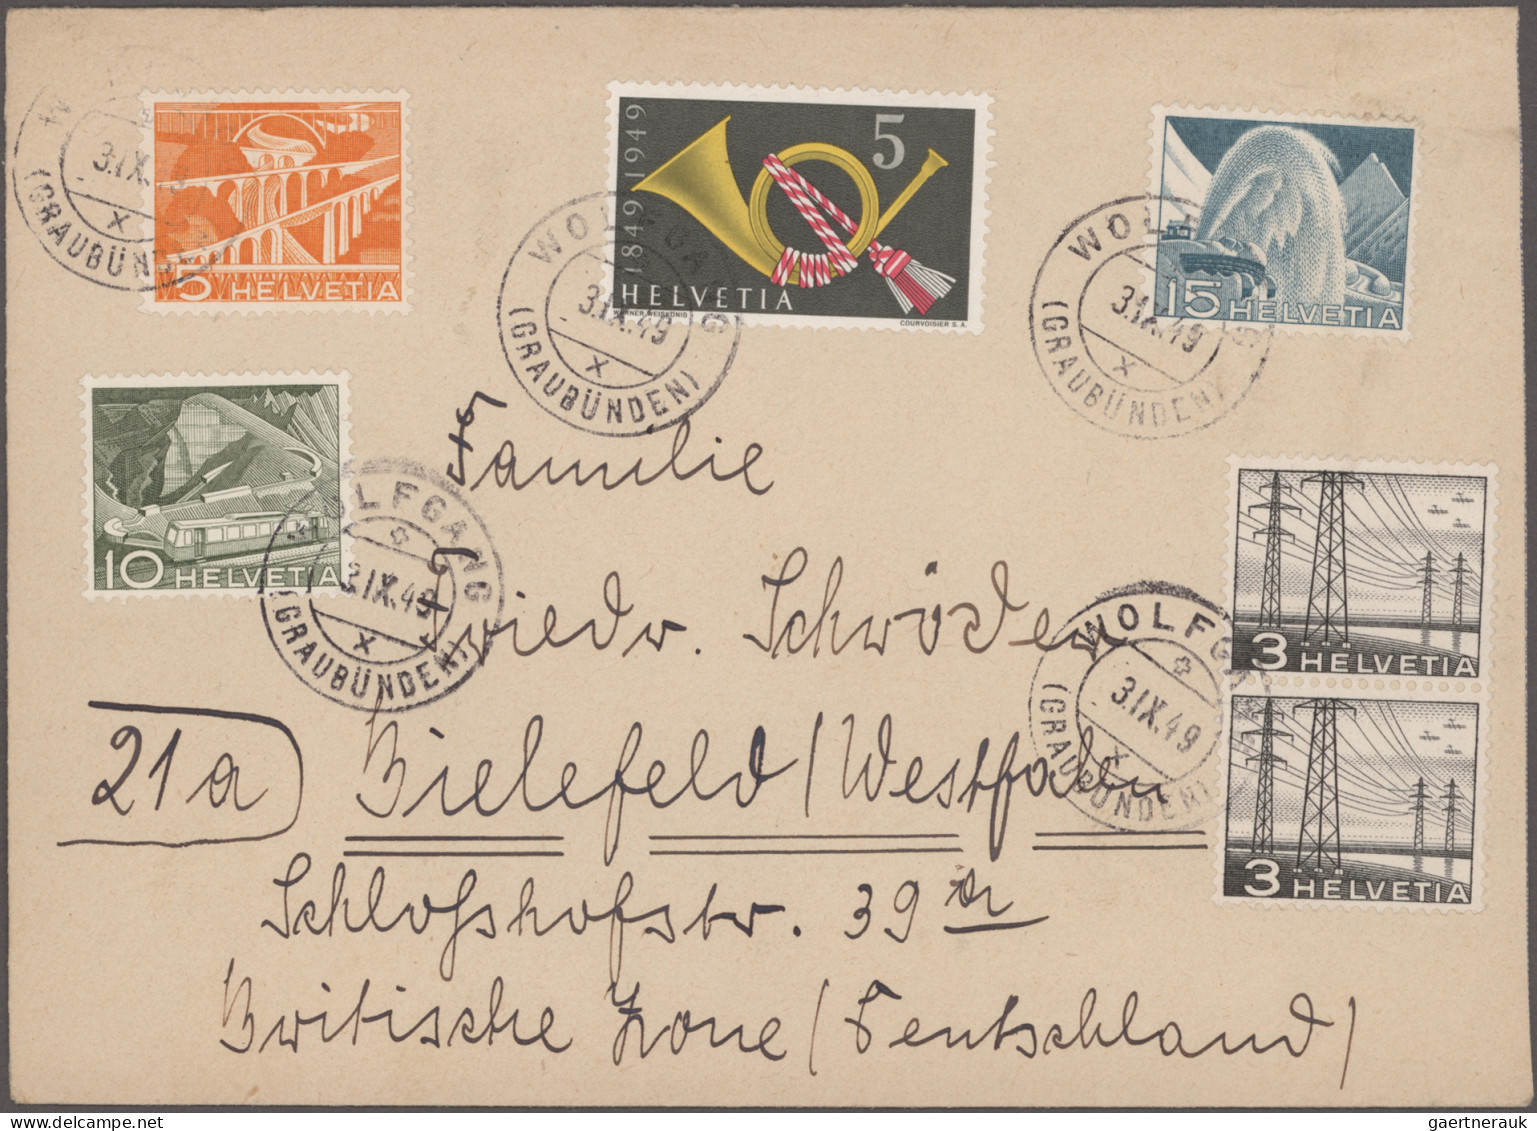 Schweiz: 1900/1990 (ca.), umfangreicher Bestand von ca. 280 Briefen und Karten i